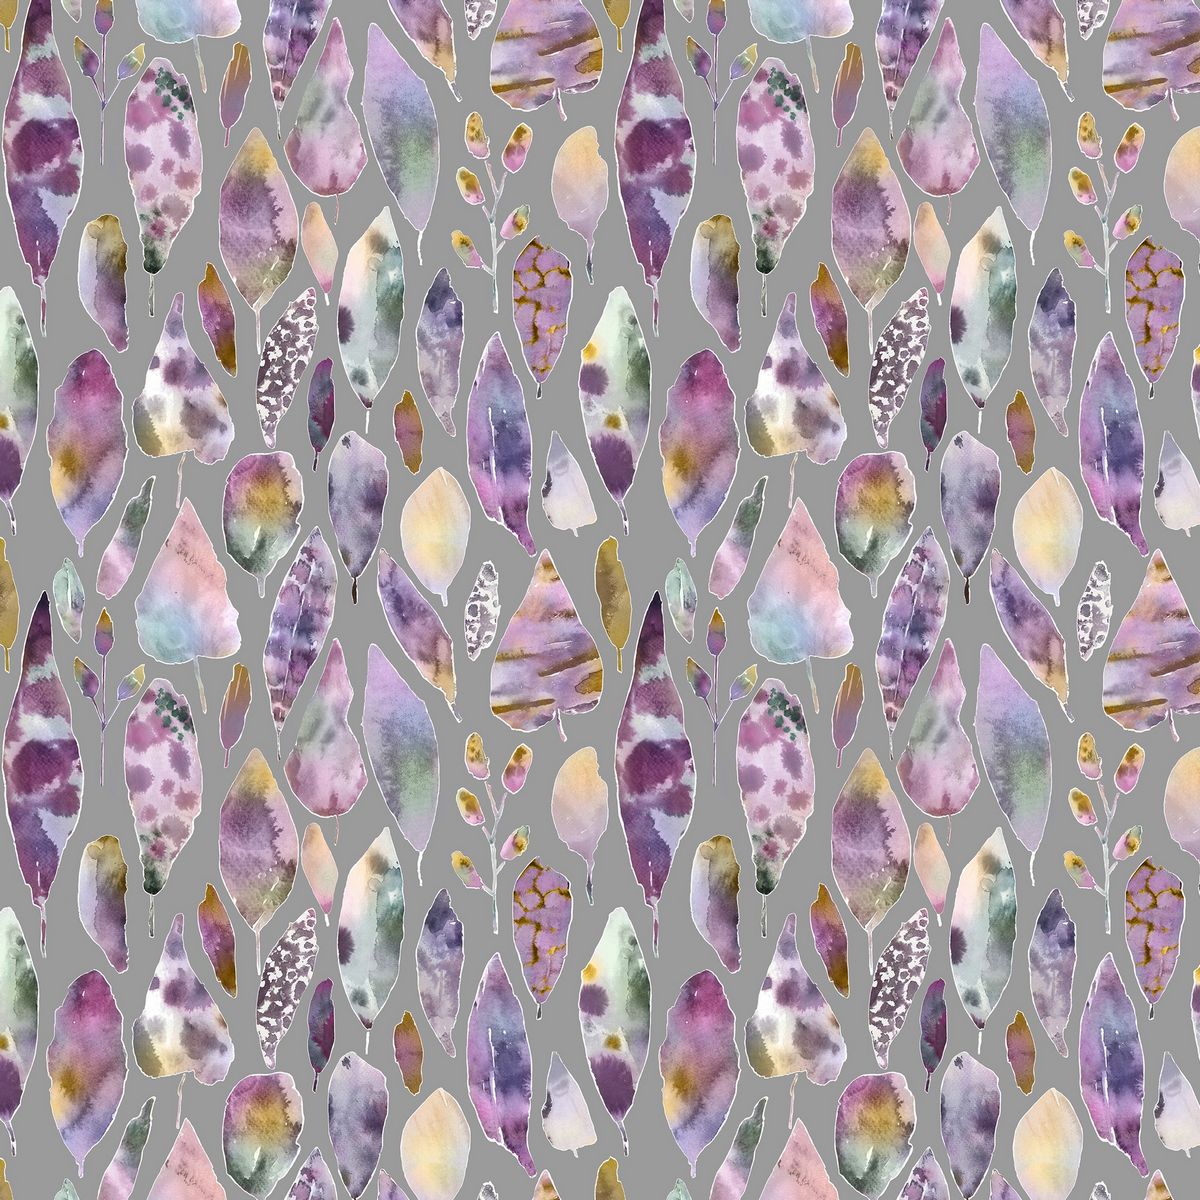 Rangi Dahlia Fabric by Voyage Maison